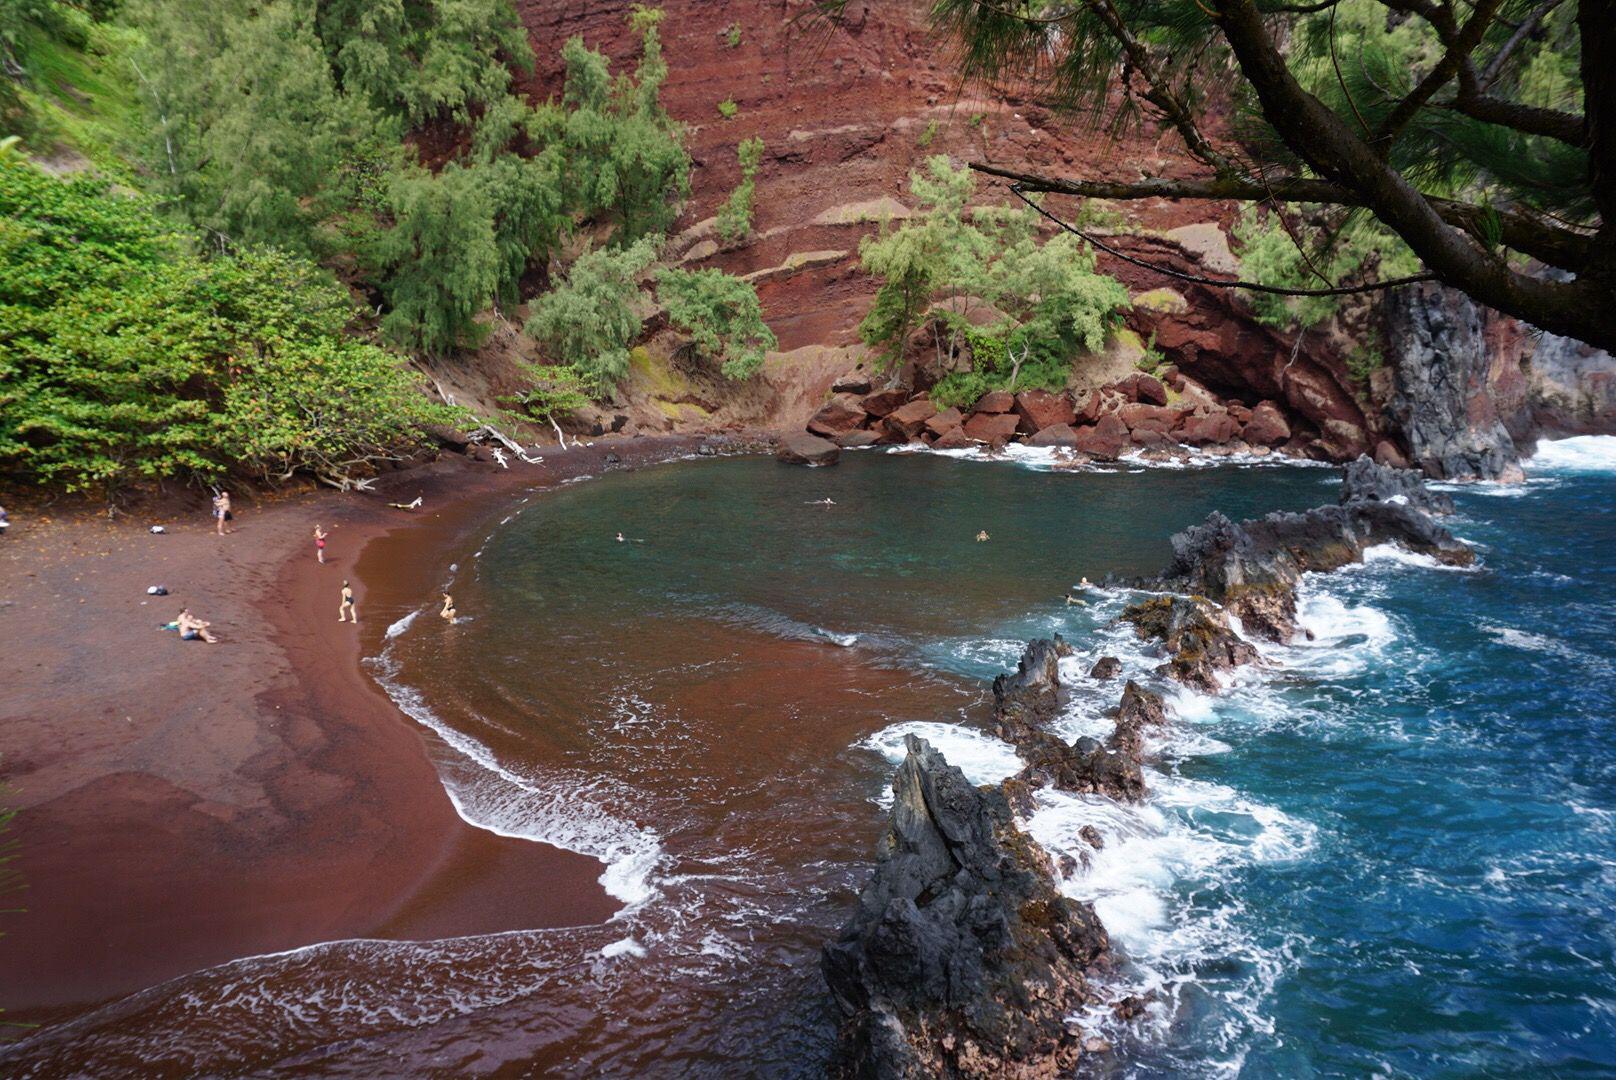 La spiaggia “infernale” di Kaihalulu, sull'Isola di Maui, nell'arcipelago delle Hawaii. La colorazione rossastra è dovuta ai residui di cenere lavica e all’alta concentrazione di ferro.